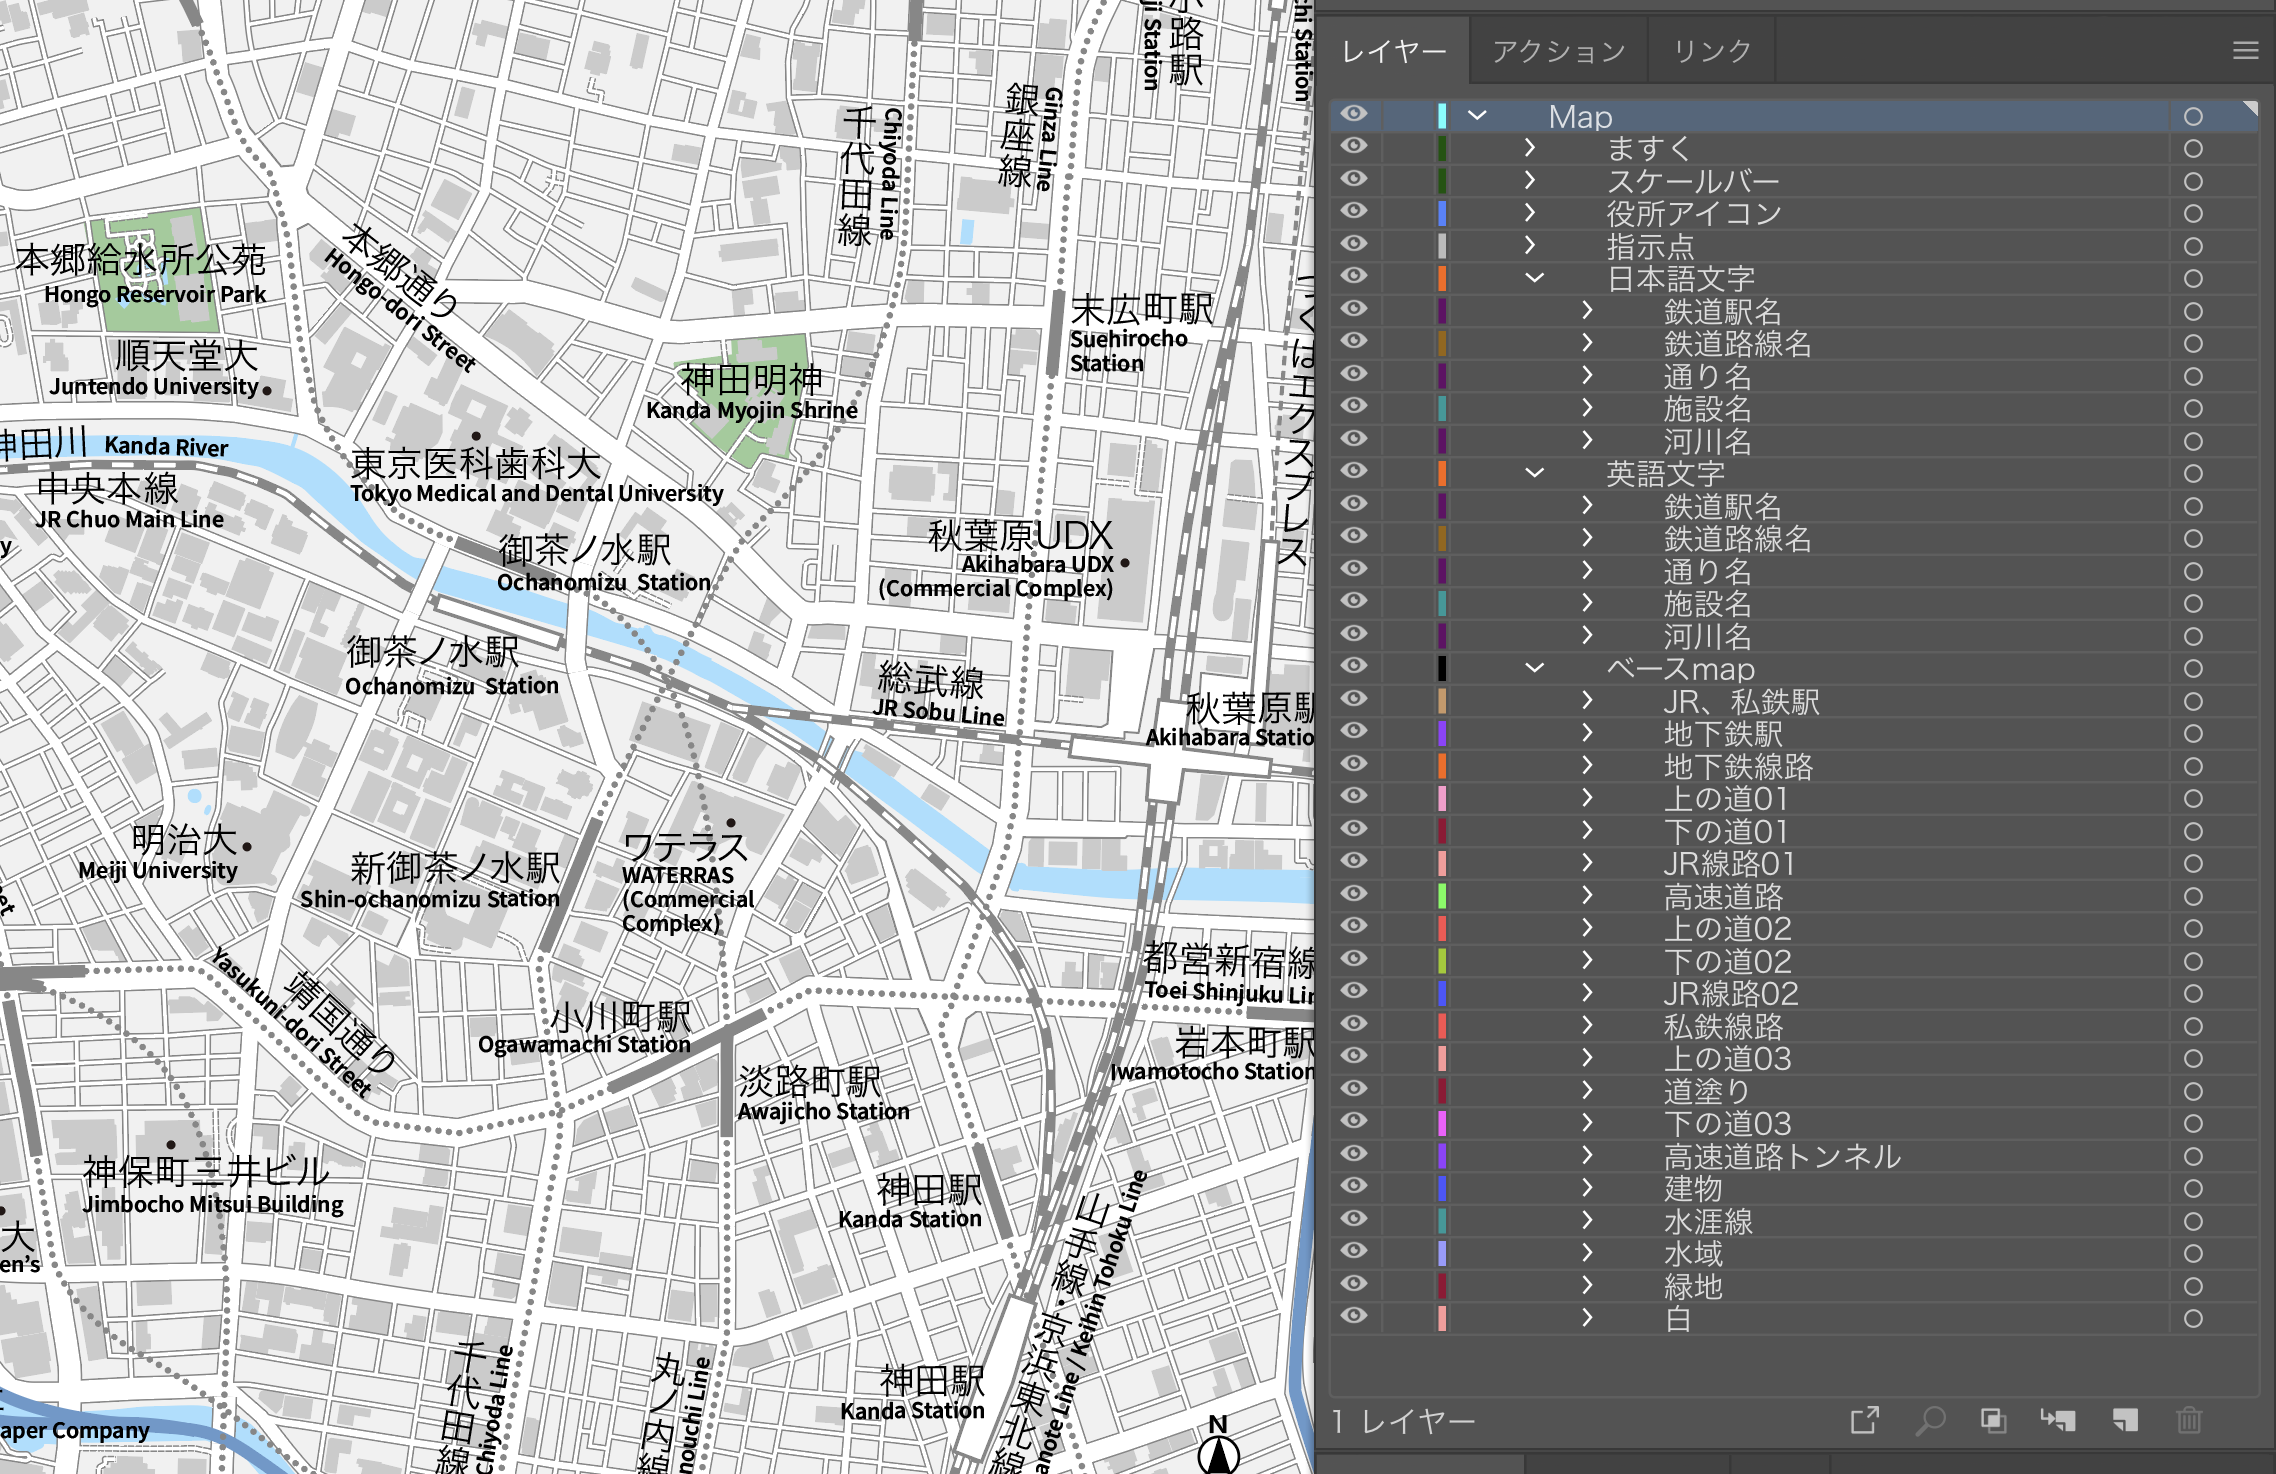 「編集・加工しやすい」に、こだわった地図 東京 飯田橋・市ヶ谷・四ツ谷駅のイラストレーターデータ